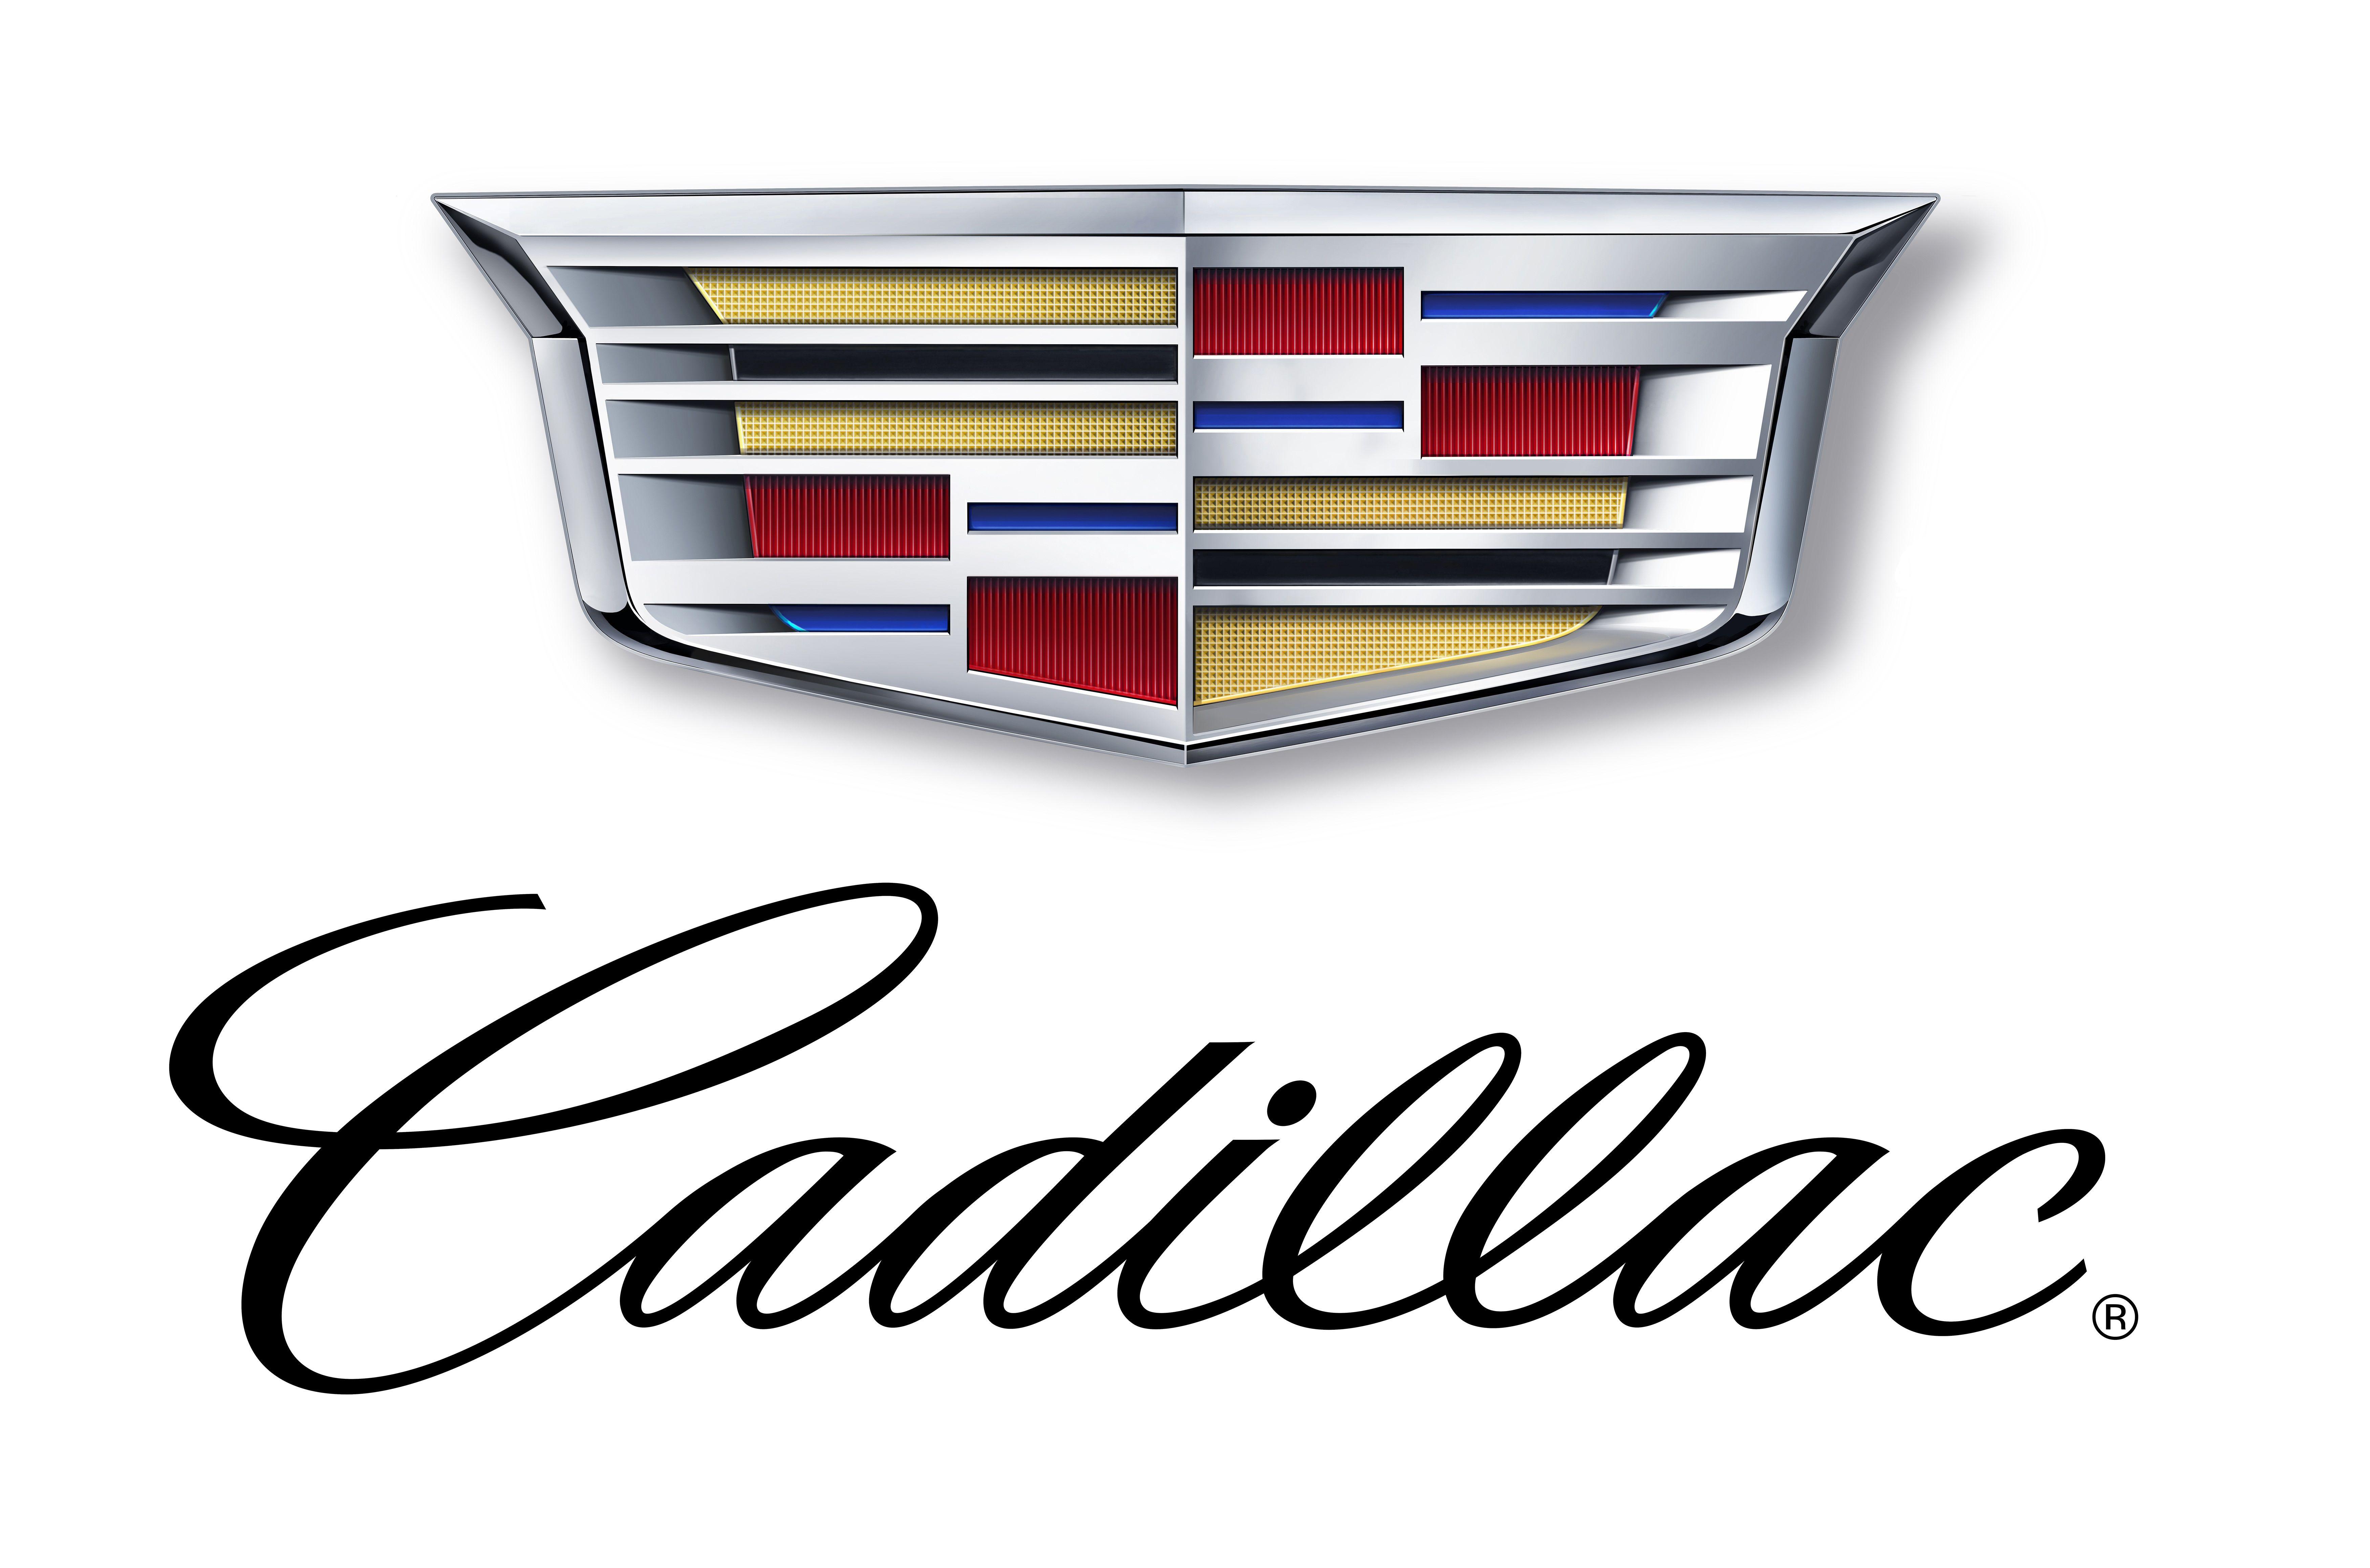 2016 New Cadillac Logo - Upcoming Top-End Product Named Cadillac CT6